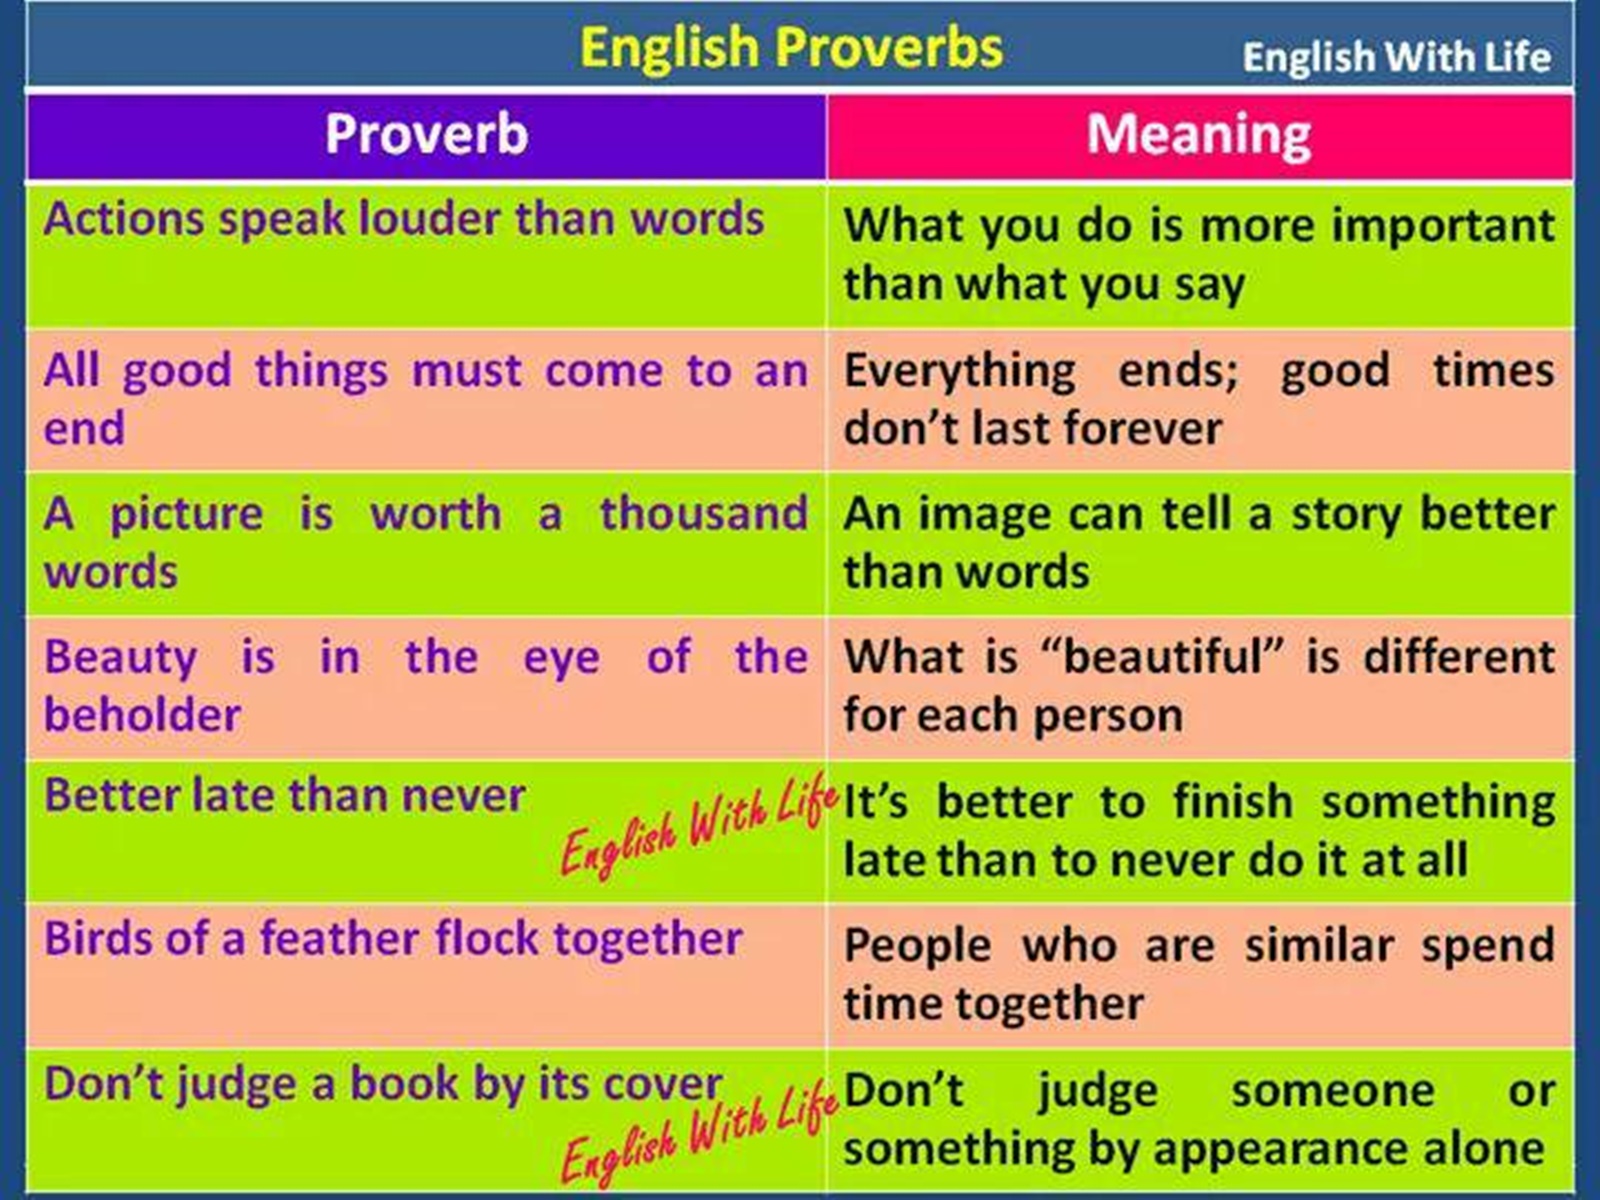 Переведи на английский никогда. Английские пословицы. English Proverbs. Английские пословицы и поговорки. Пословицы на английском языке.